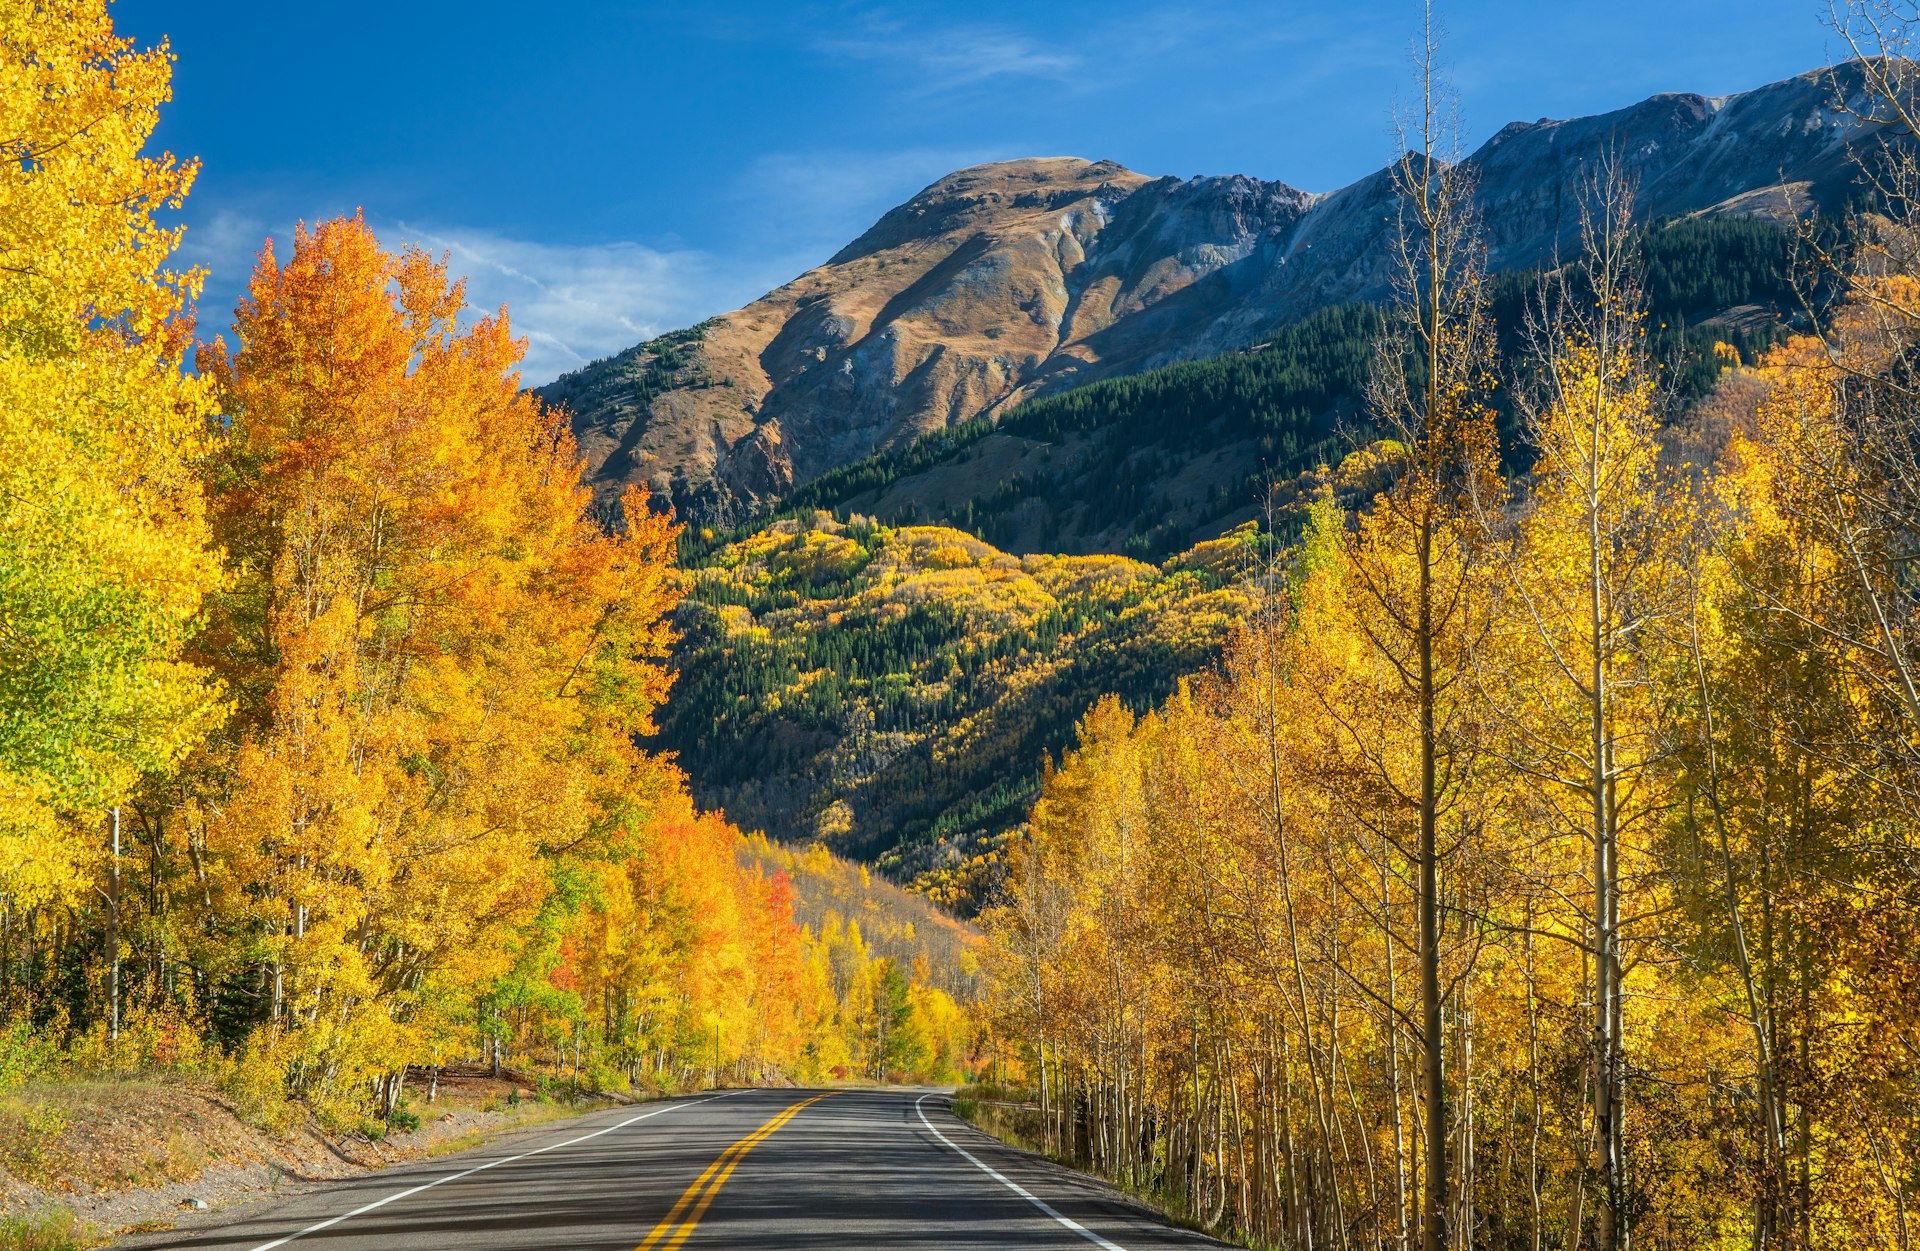 Autumn Aspen scenery on the scenic Million Dollar Highway - Colorado Rocky Mountains